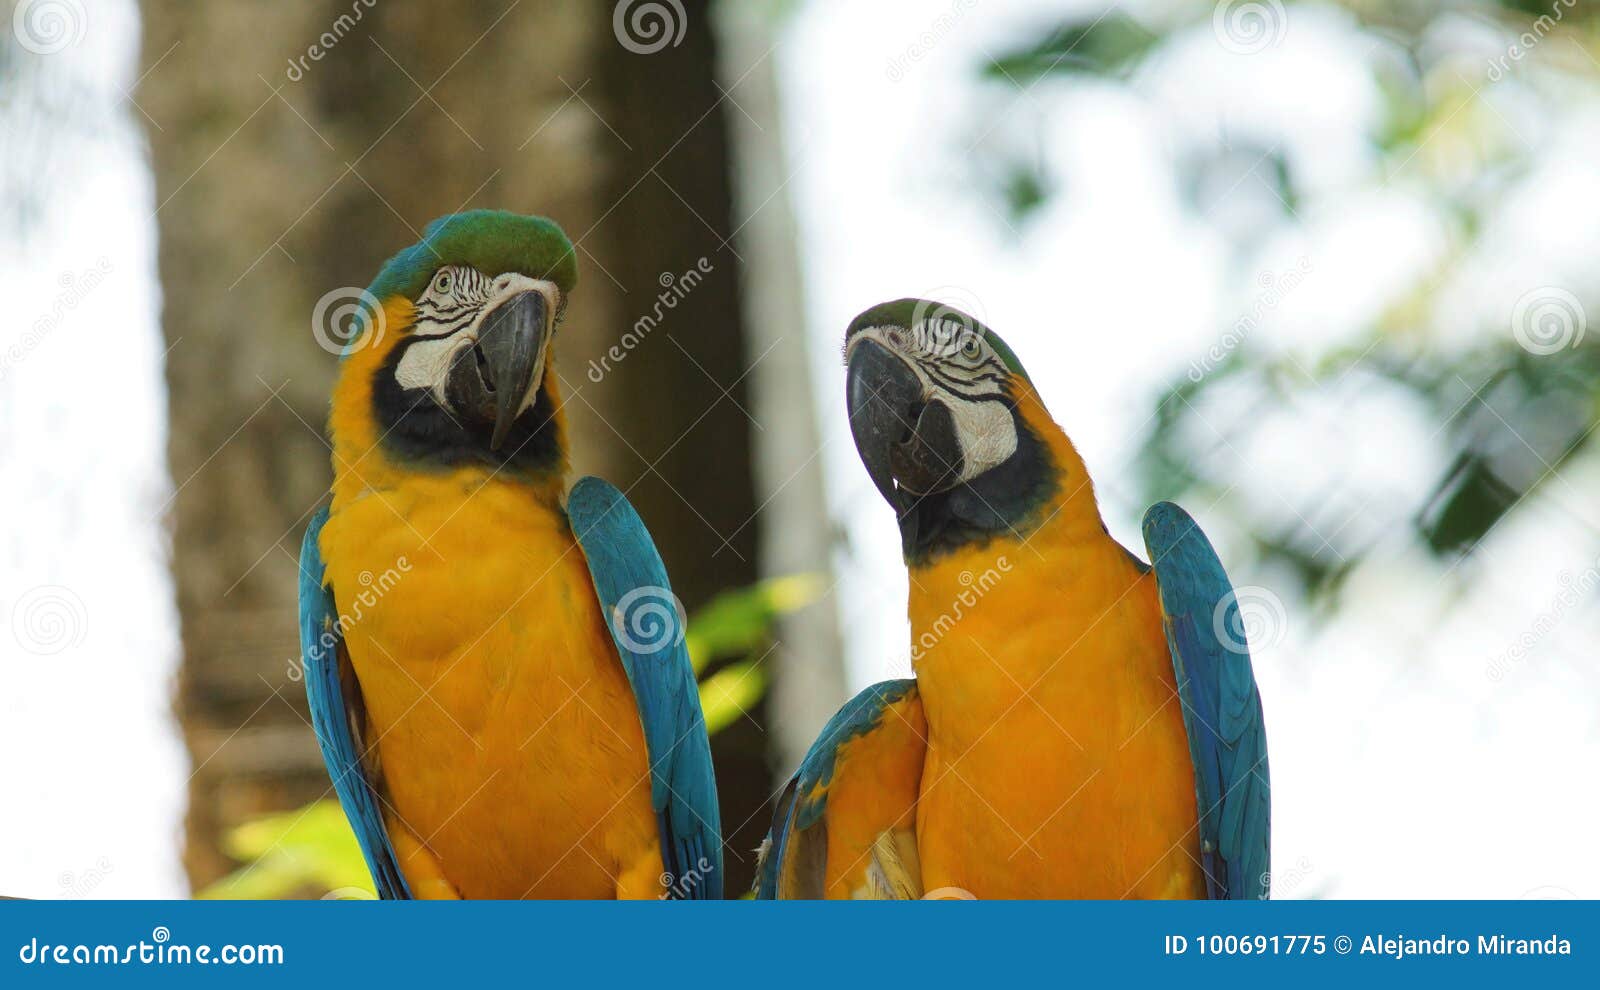 pair of macaws on white background in ecuadorian amazon. common names: guacamayo or papagayo